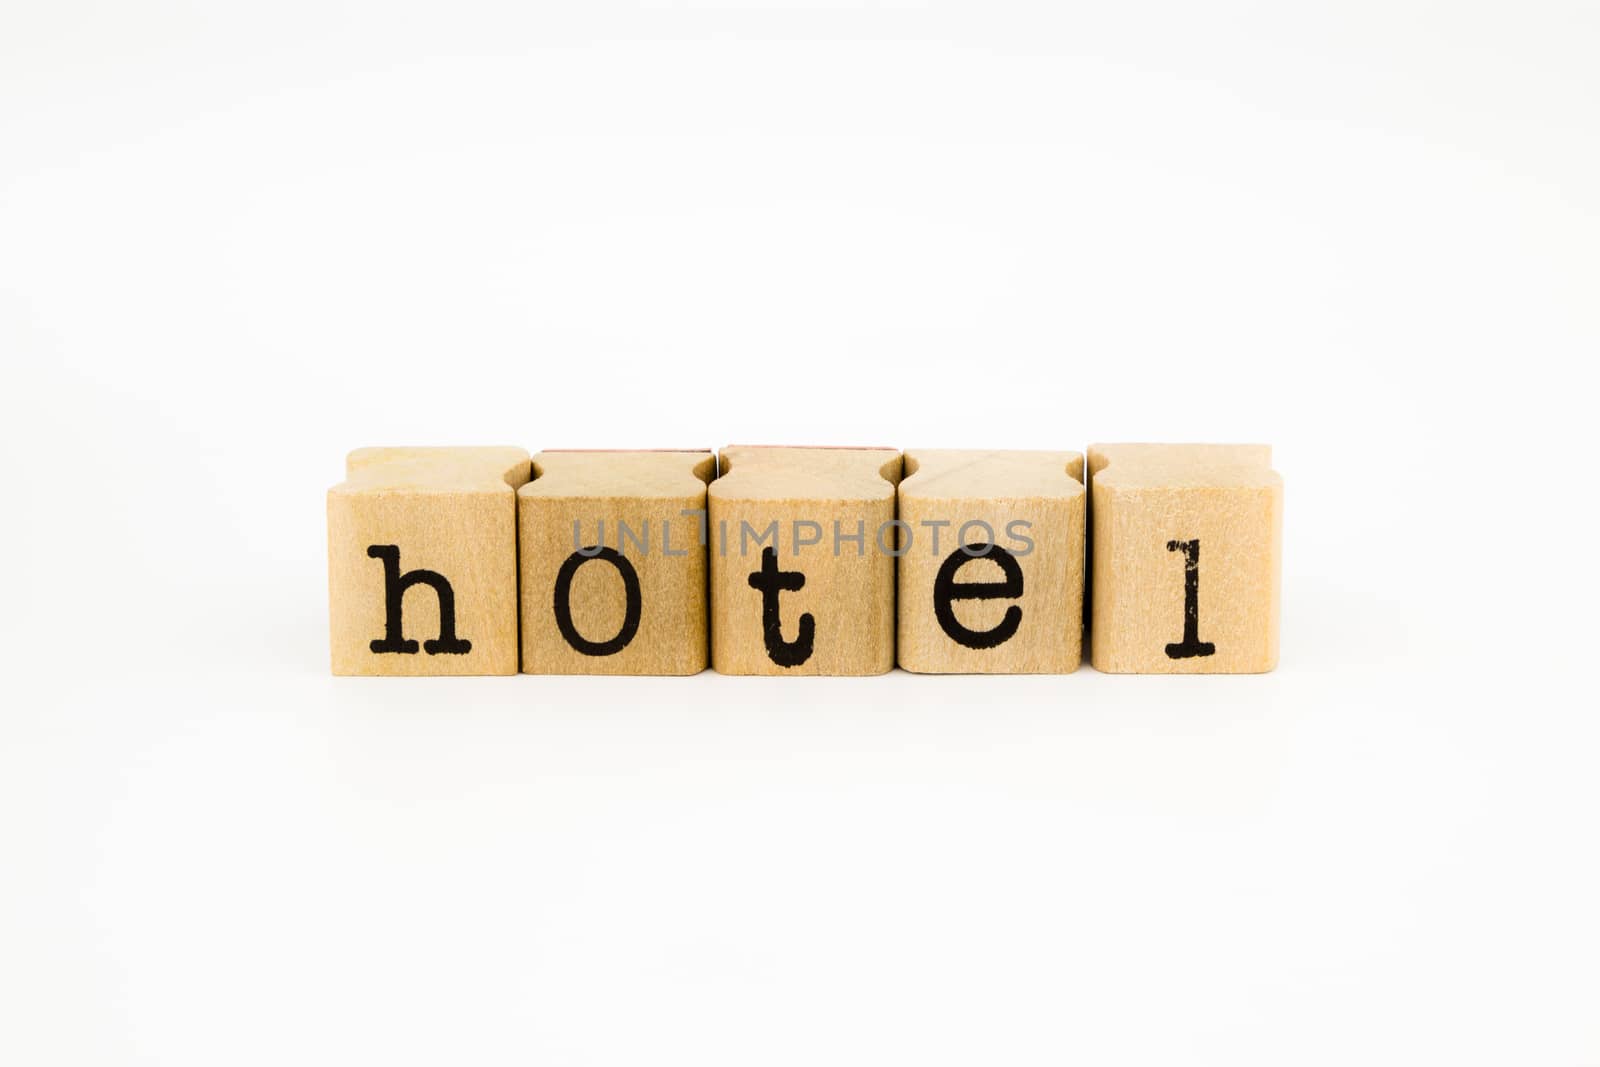 hotel wording isolate on white background by vinnstock